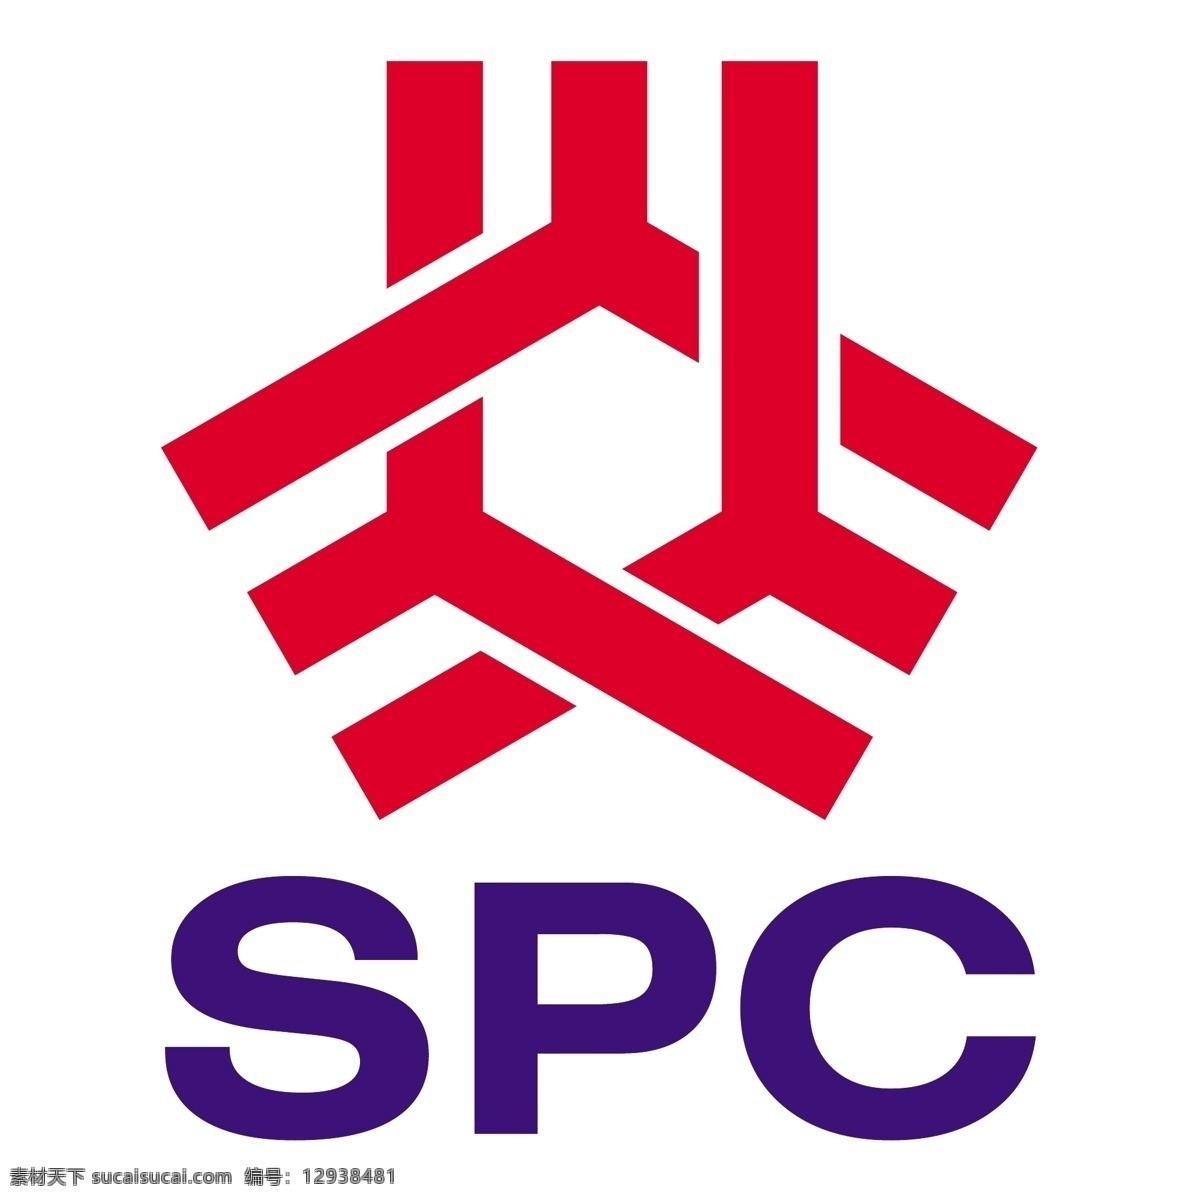 上海石化标志 矢量标志下载 spc 上海石化 logo 矢量标志 创意设计 设计素材 标识 企业标识 图标 标志矢量 标志图标 其他图标